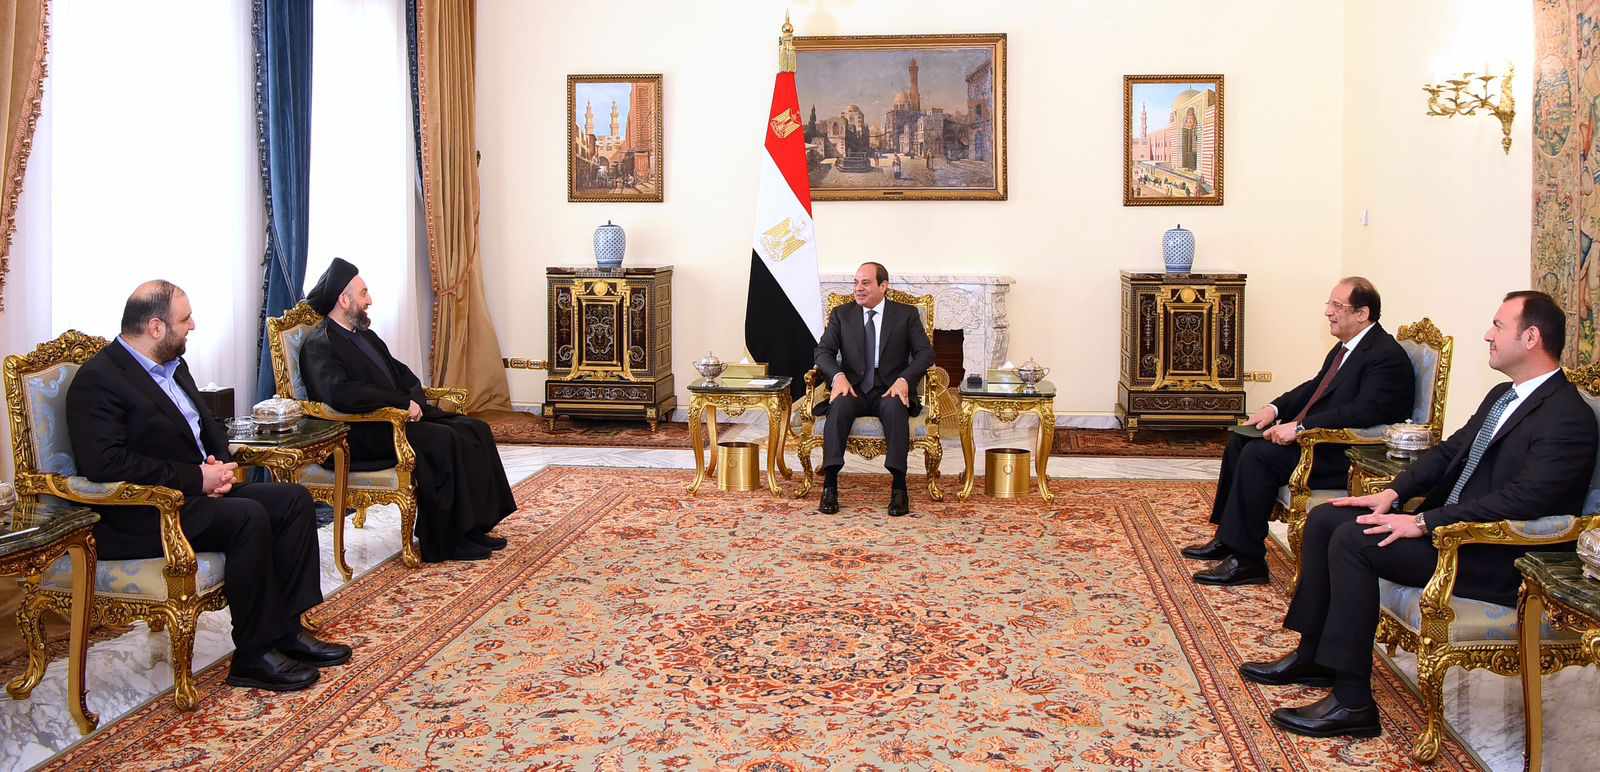 السيسي يبحث مع رئيس تيار الحكمة العراقي حماية أمن واستقرار المنطقة العربية